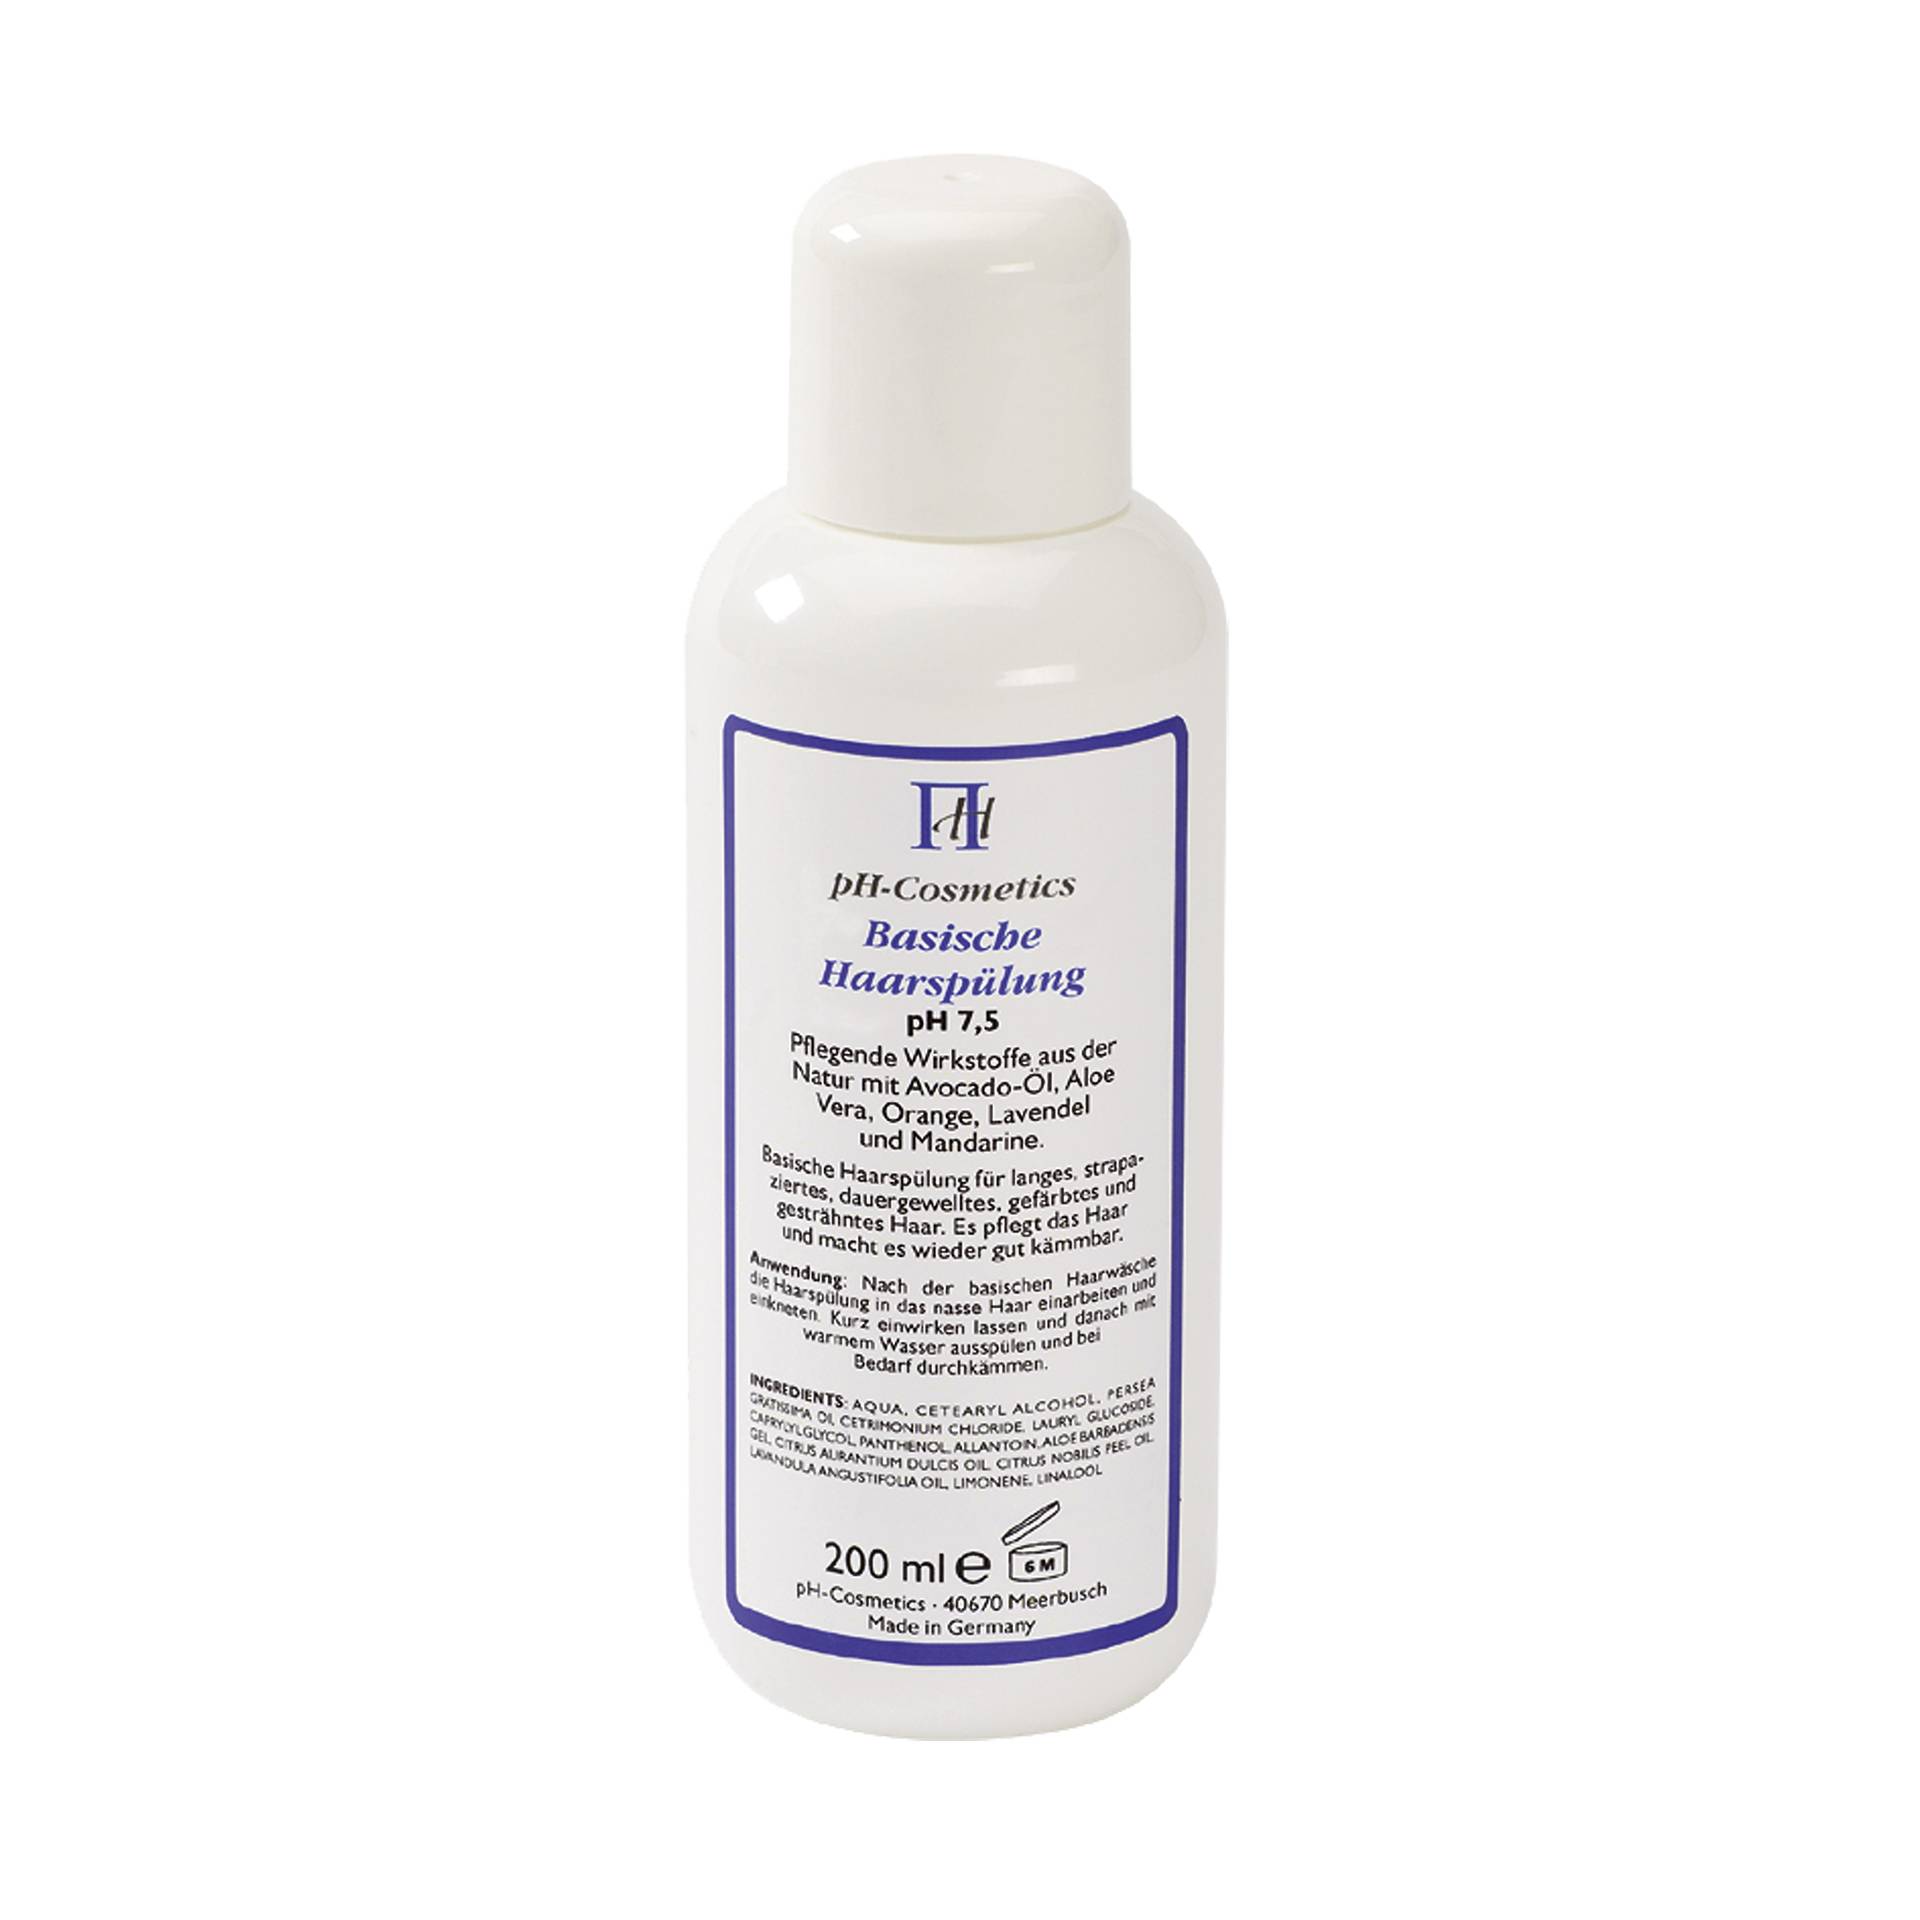 pH-Cosmetics Basische Haarspülung pH 7.5 200 ml - Für gepflegtes und gesund aussehendes Haar - vegan - ph Cosmetics von ph Cosmetics